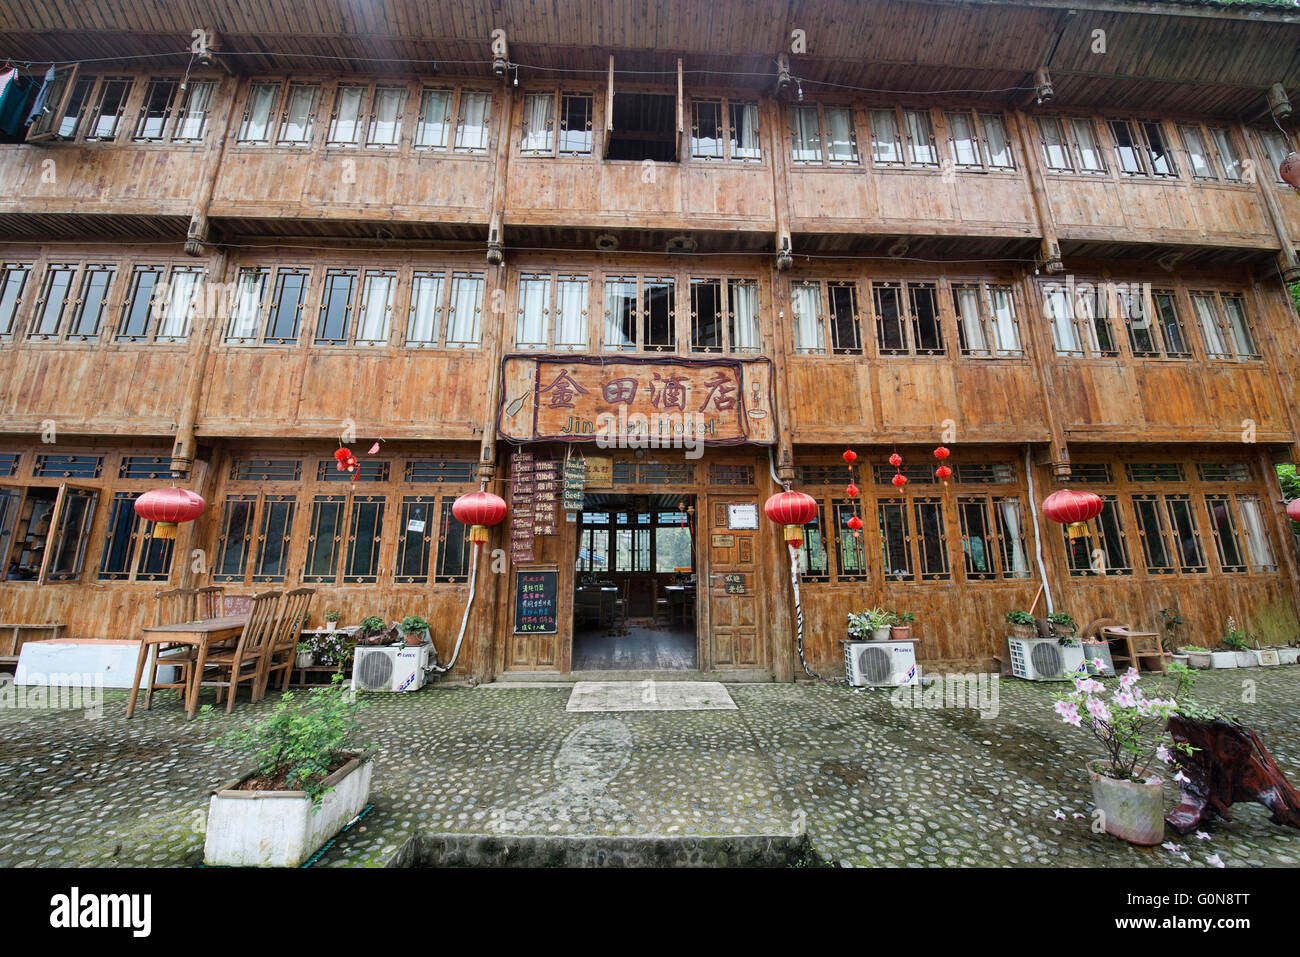 Maison traditionnelle Yao et lodge, Dazhai, région autonome du Guangxi, Chine Banque D'Images